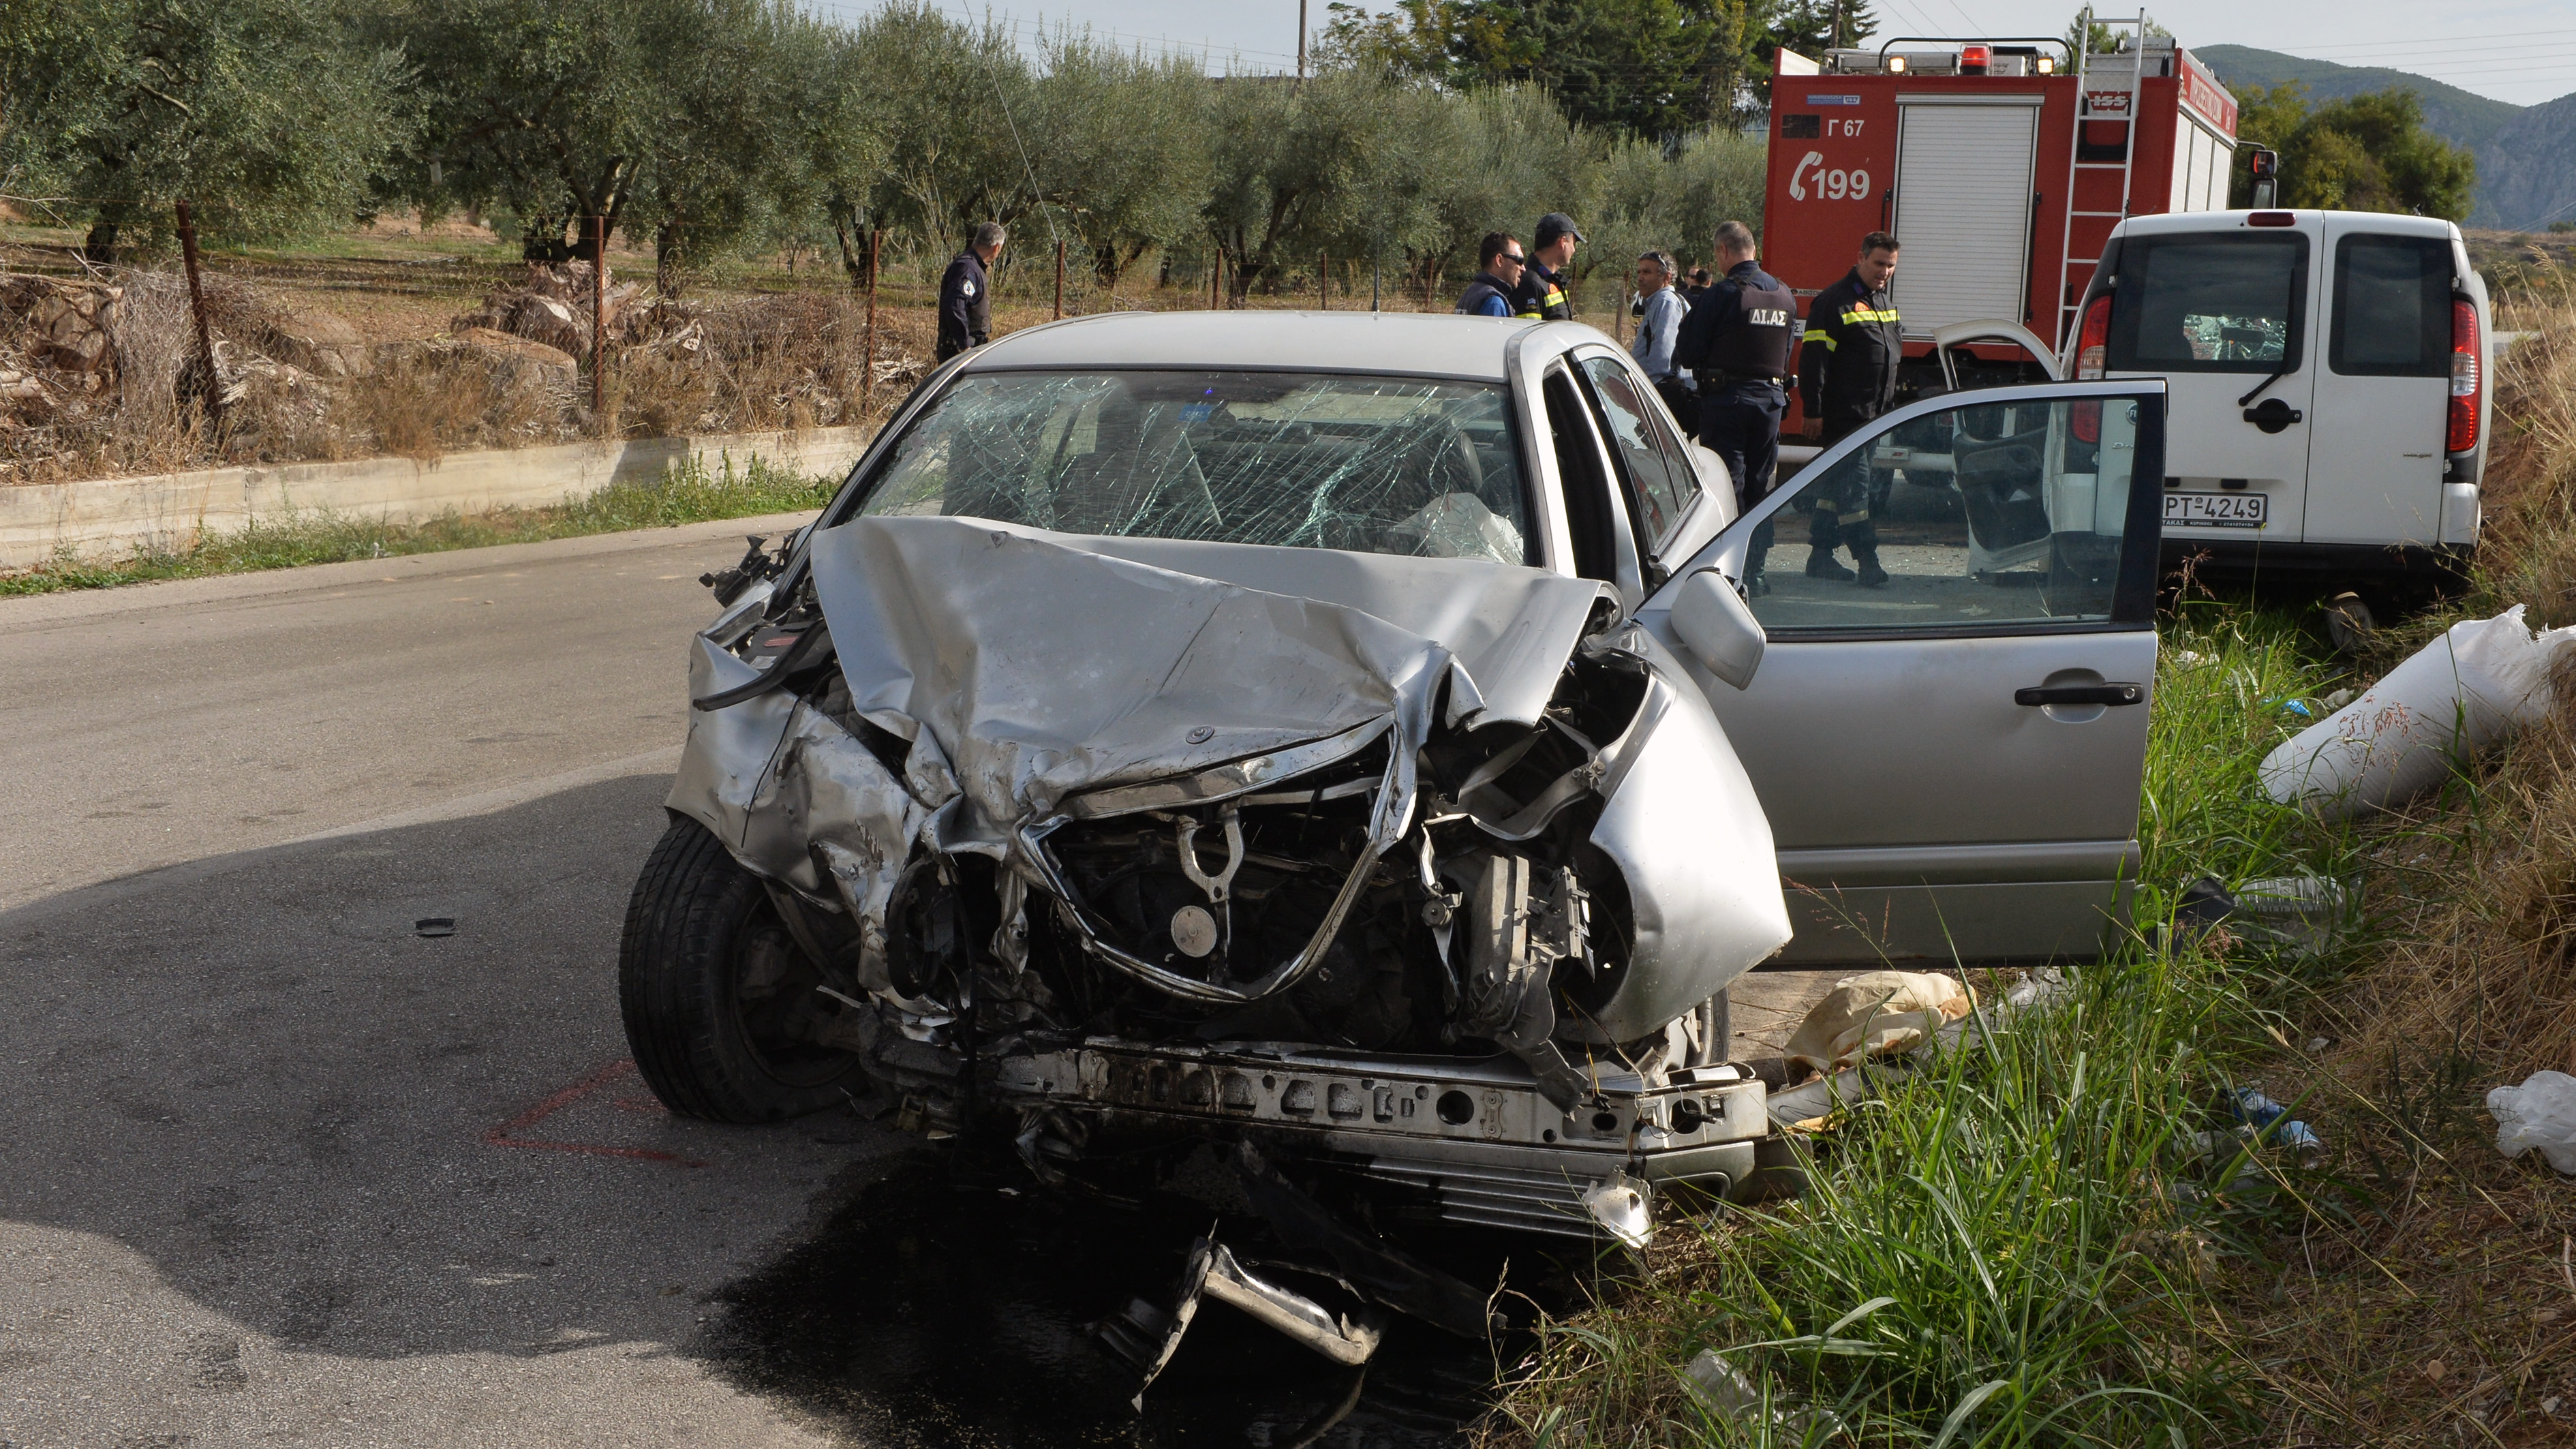 Βιωματικές ποινές σε όσους προκαλούν σοβαρά τροχαία ατυχήματα | tovima.gr